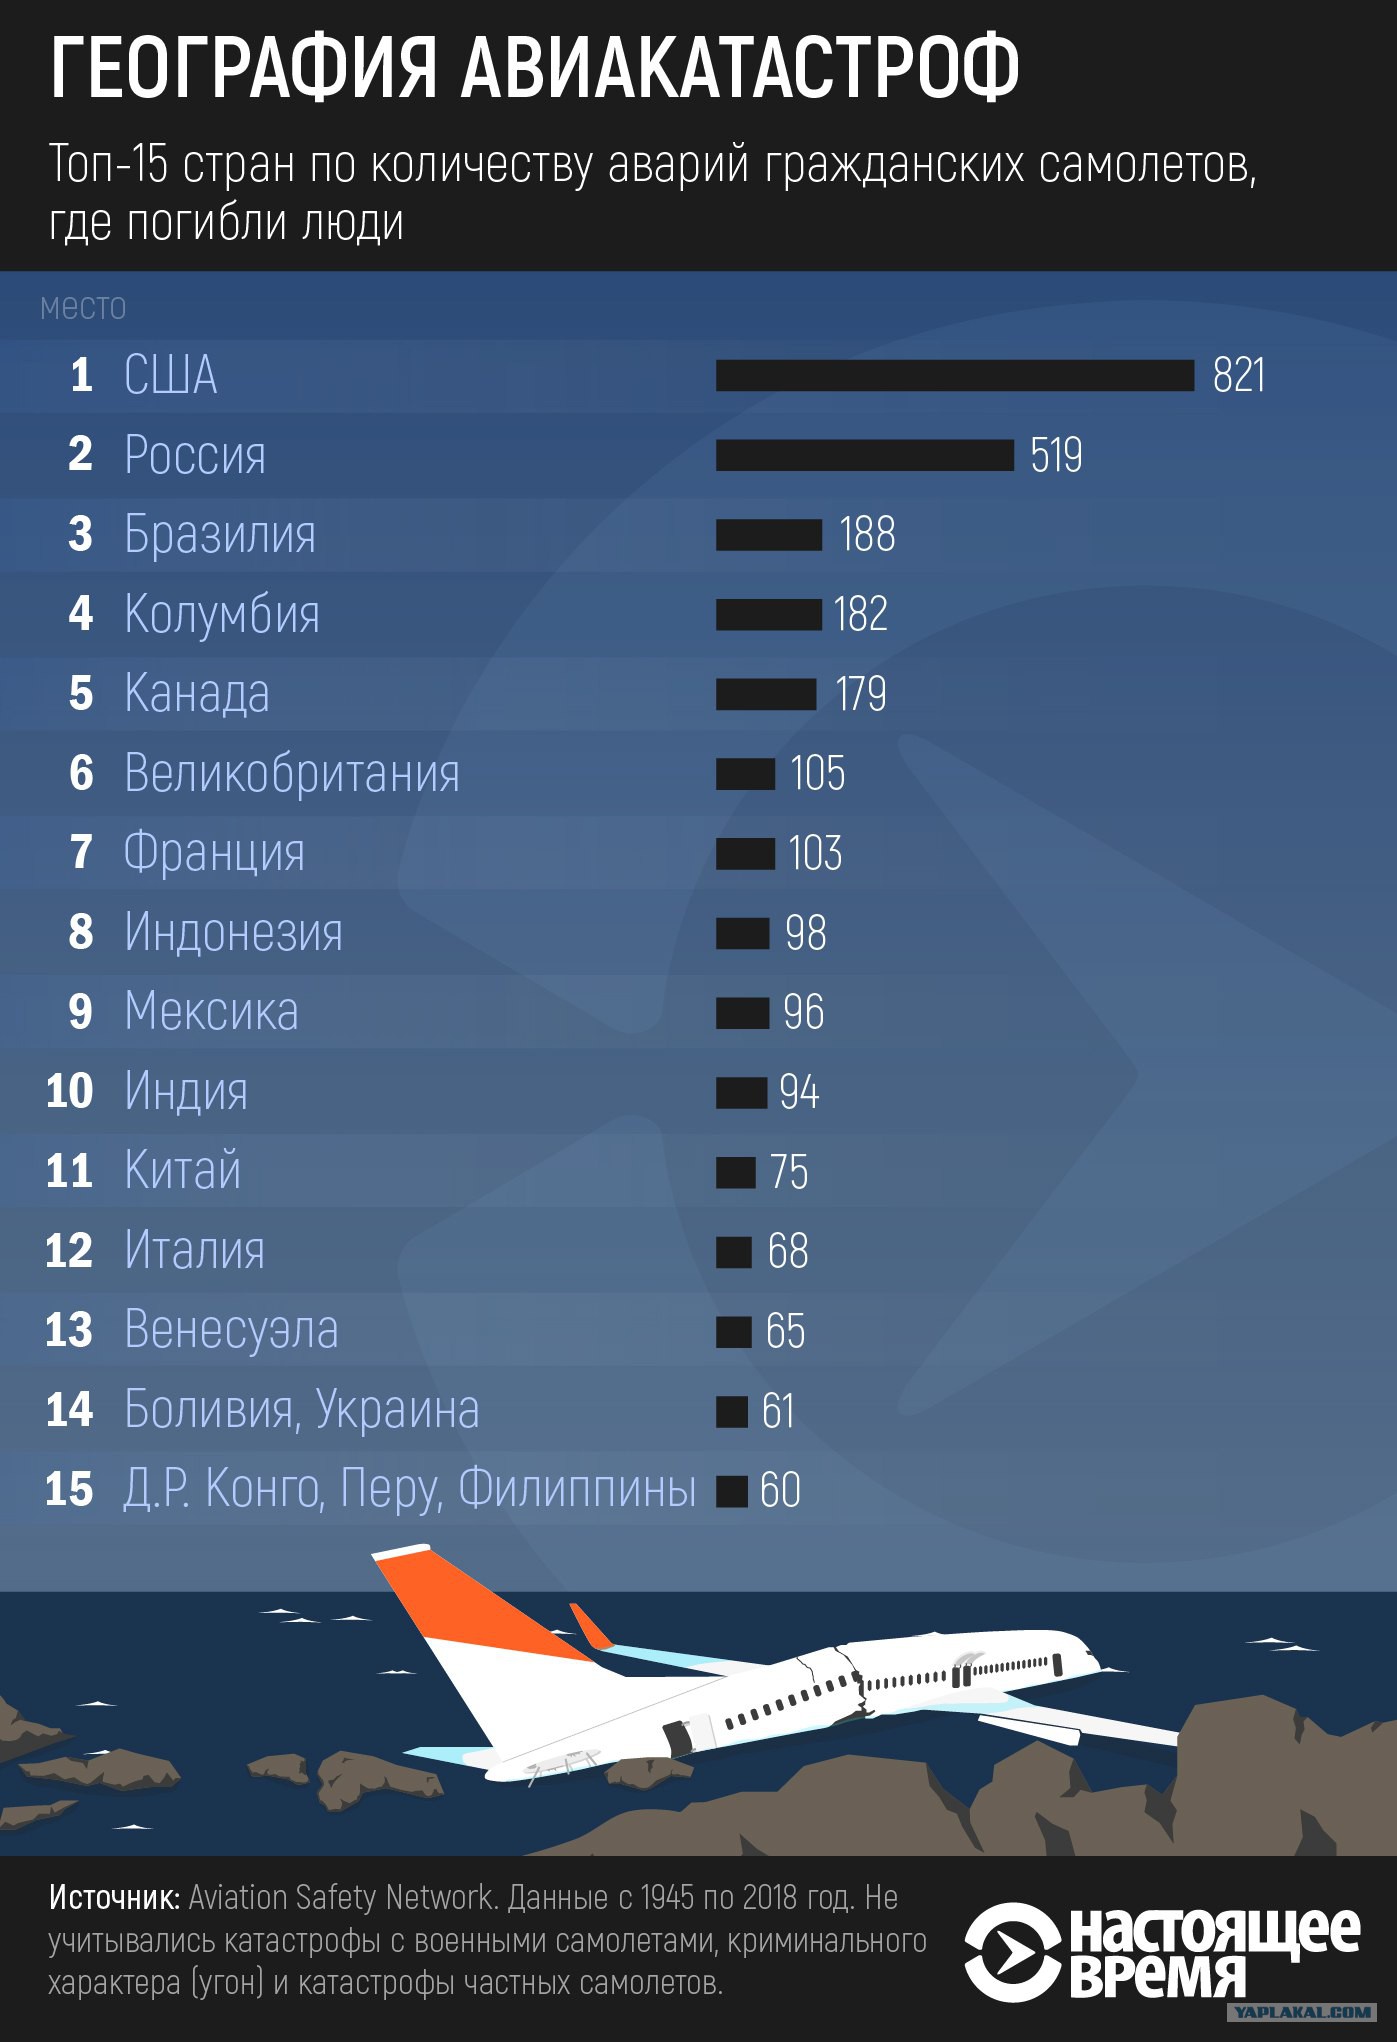 Сколько падали самолеты. Статистика падения самолетов. Количество самолетов по странам. Статистика авиакатастроф по годам. Статистика крушений самолетов.